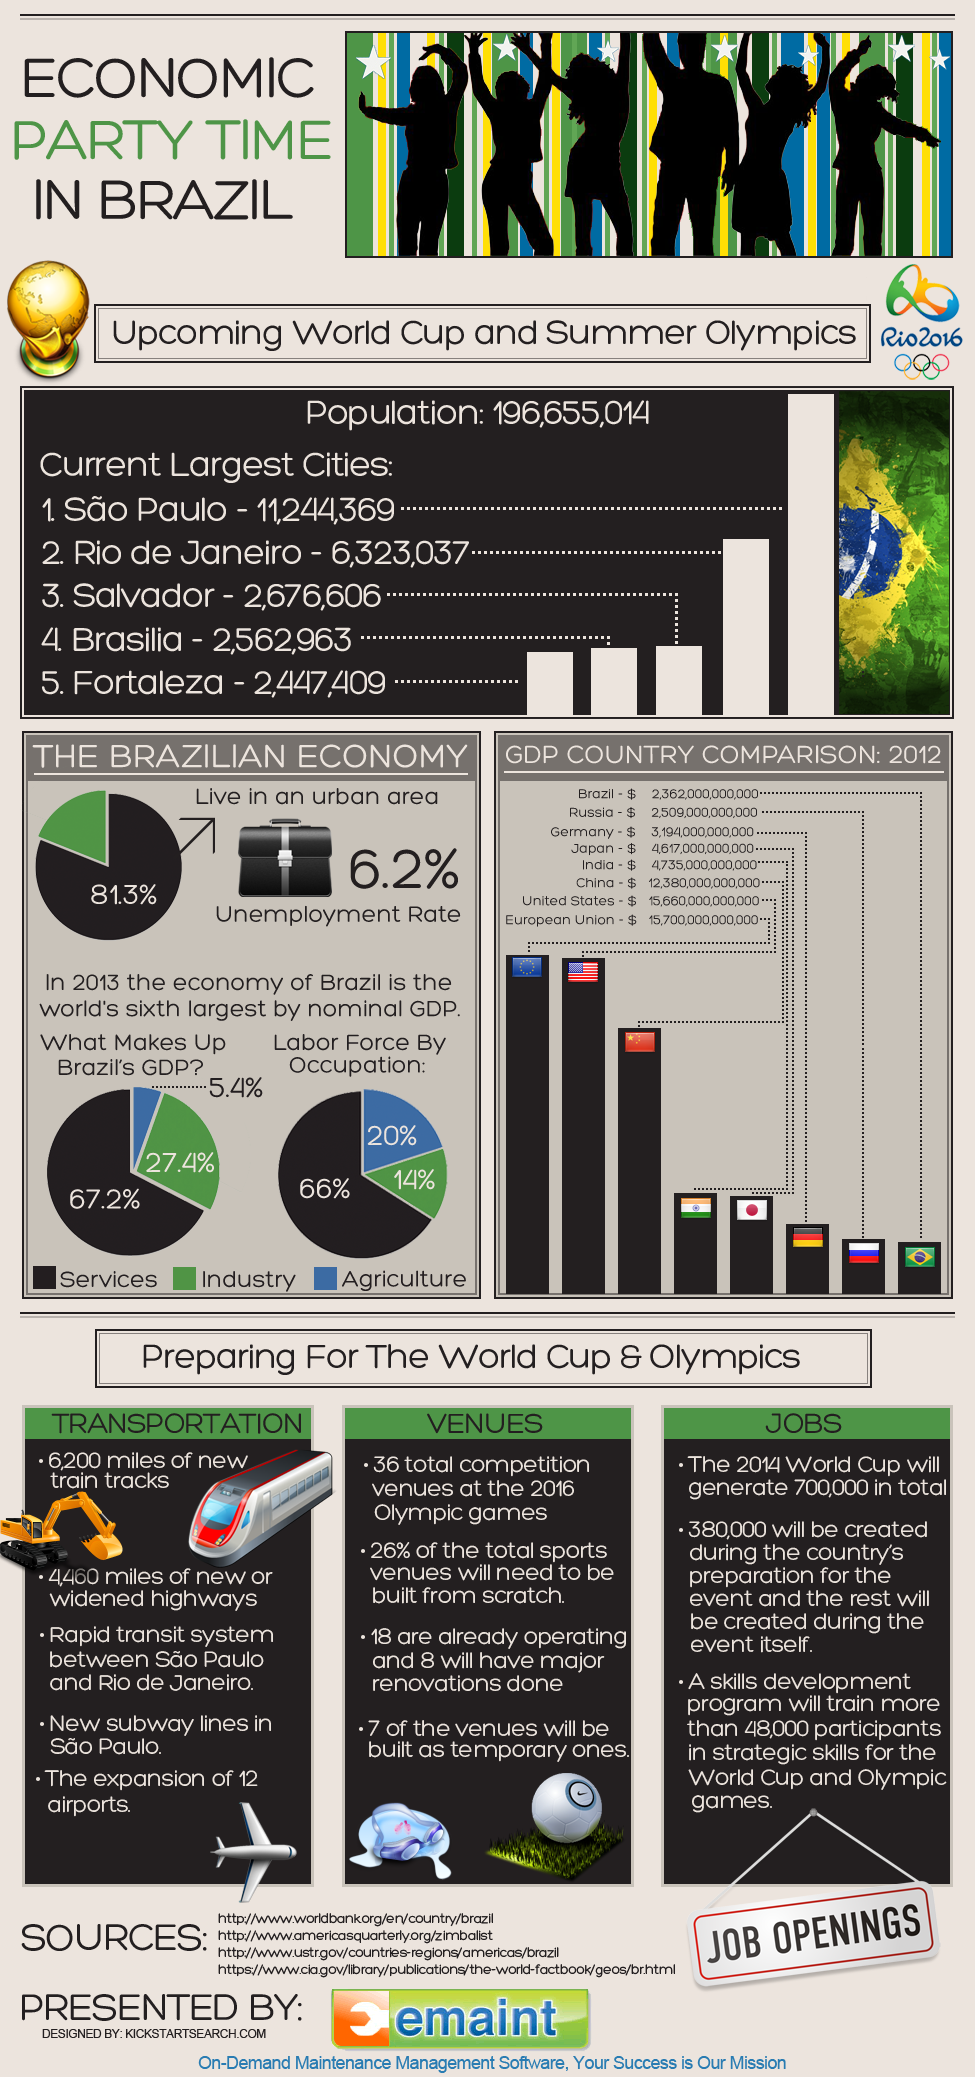 Infografik zur Zeit der Wirtschaftsparty in Brasilien